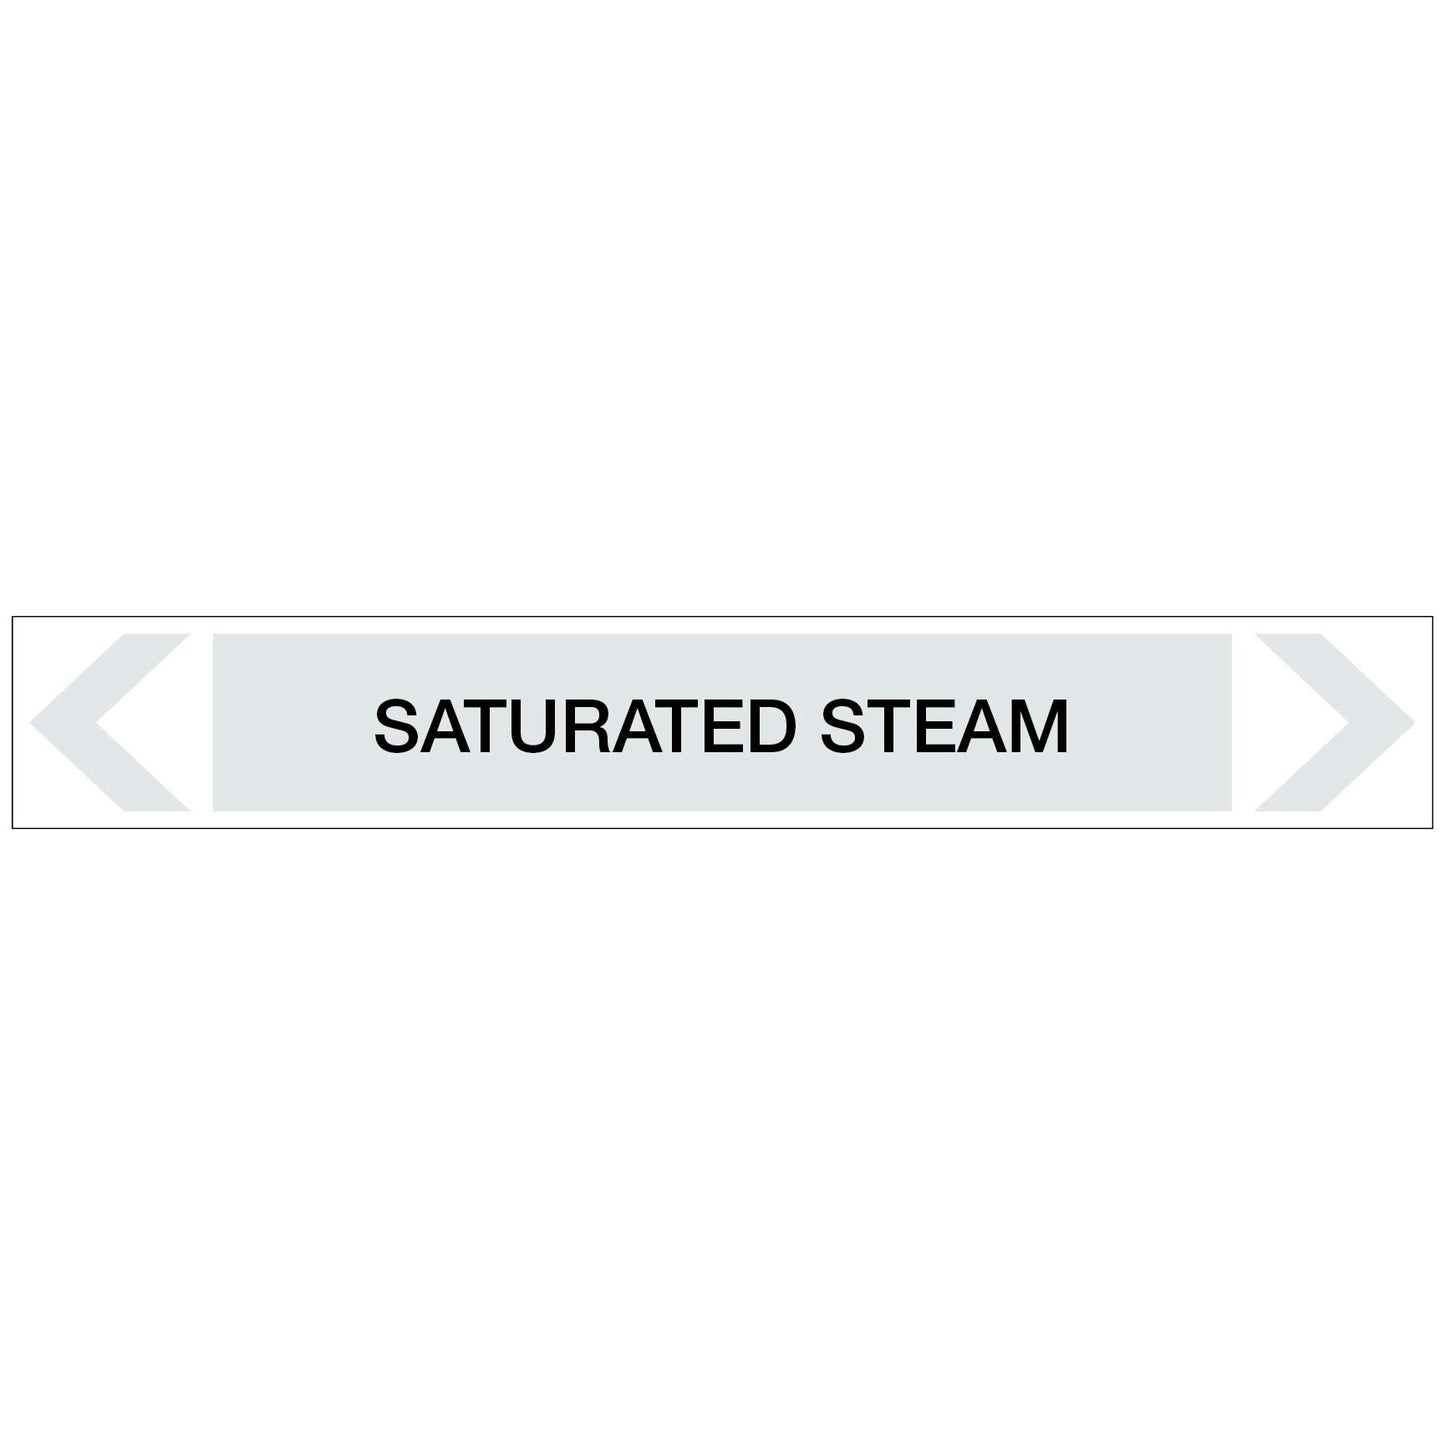 Steam - Saturated Steam - Pipe Marker Sticker